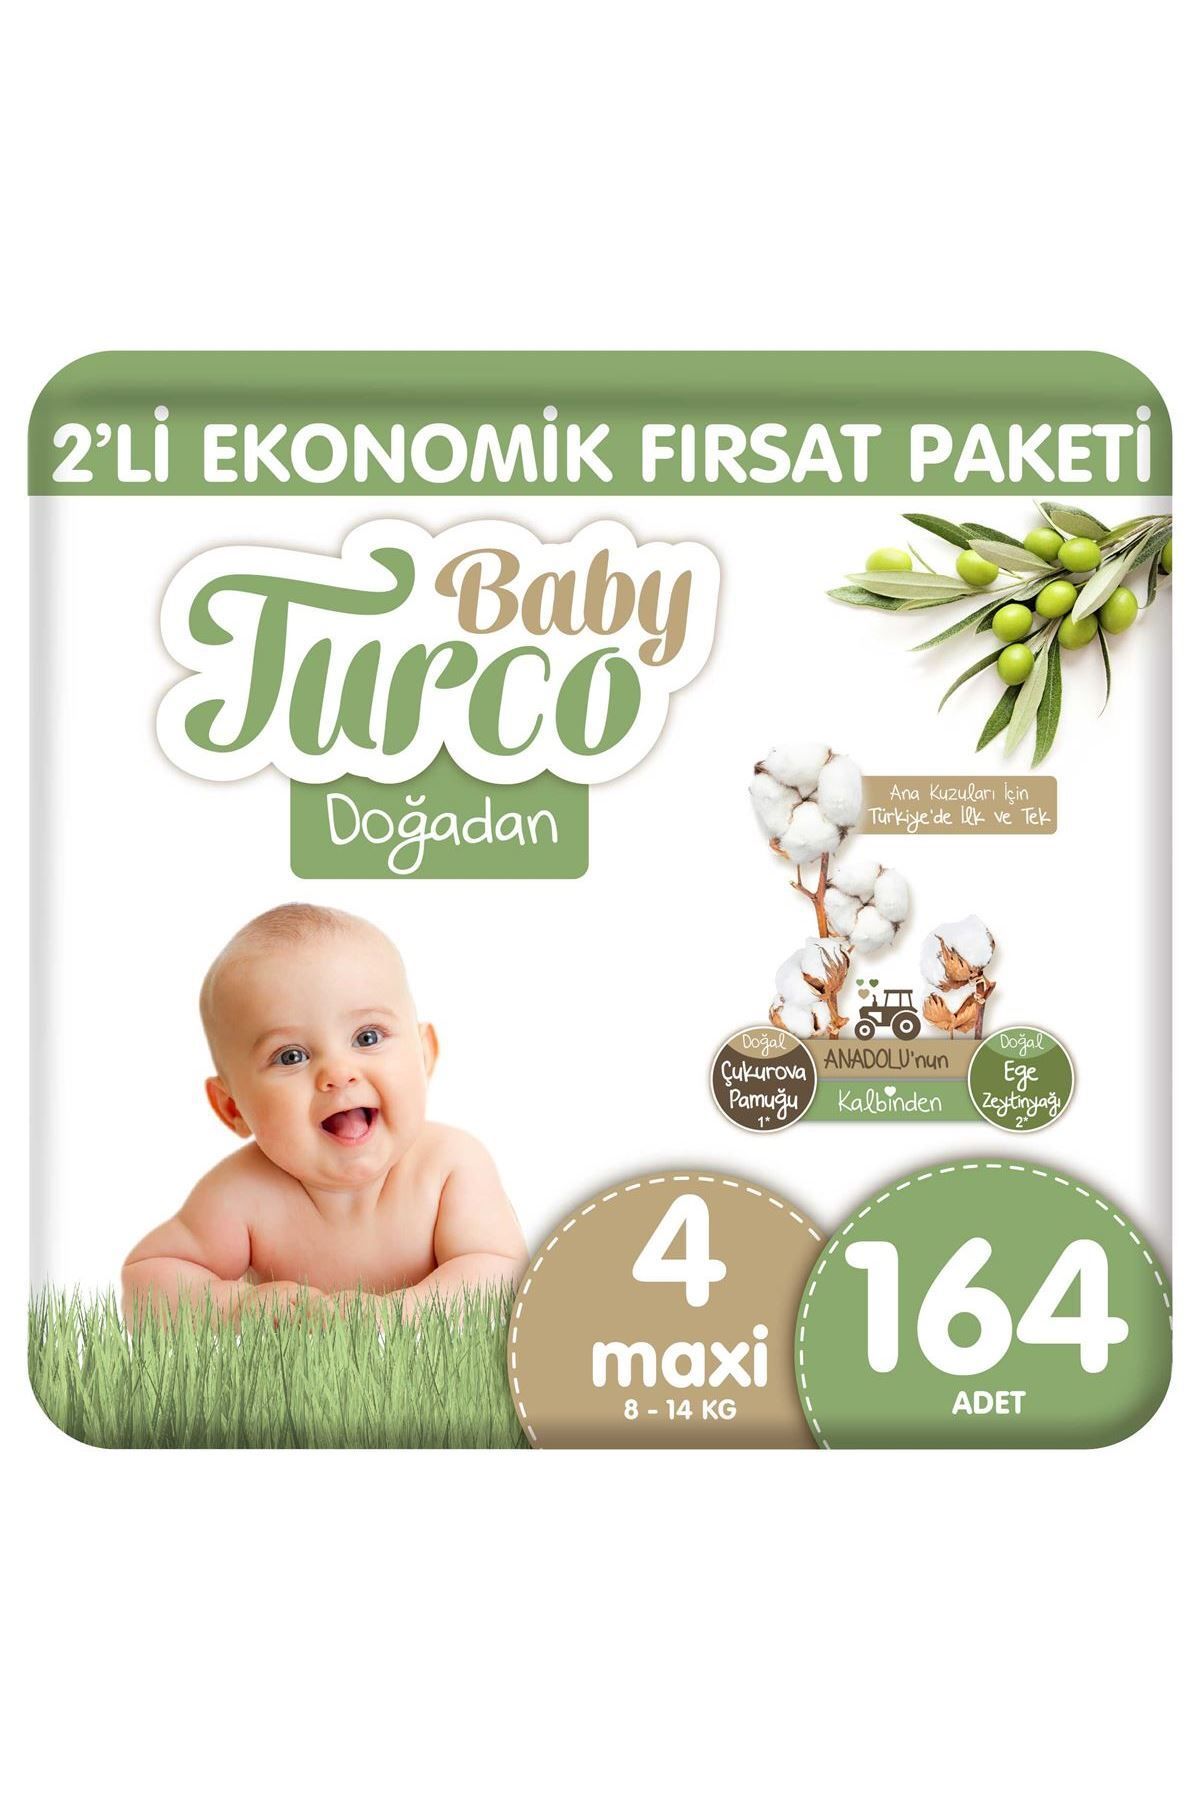 Baby Turco Doğadan 2'Li Ekonomik Fırsat Paketi Bebek Bezi 4 Numara Maxi 164 Adet